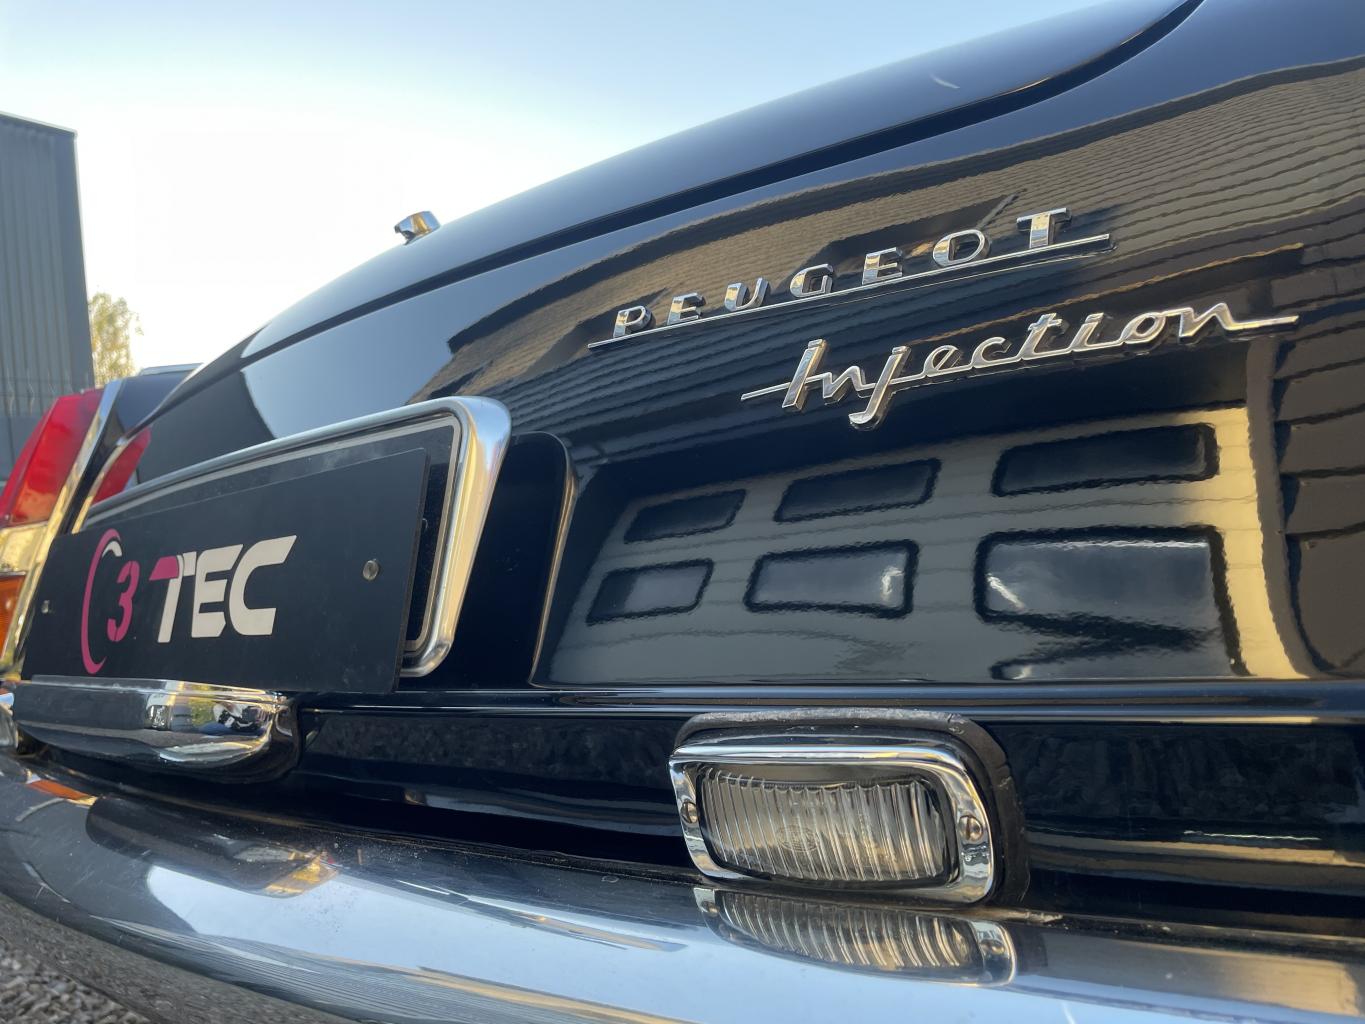 Polish et traitement C2 GTechniq sur une Peugeot 404